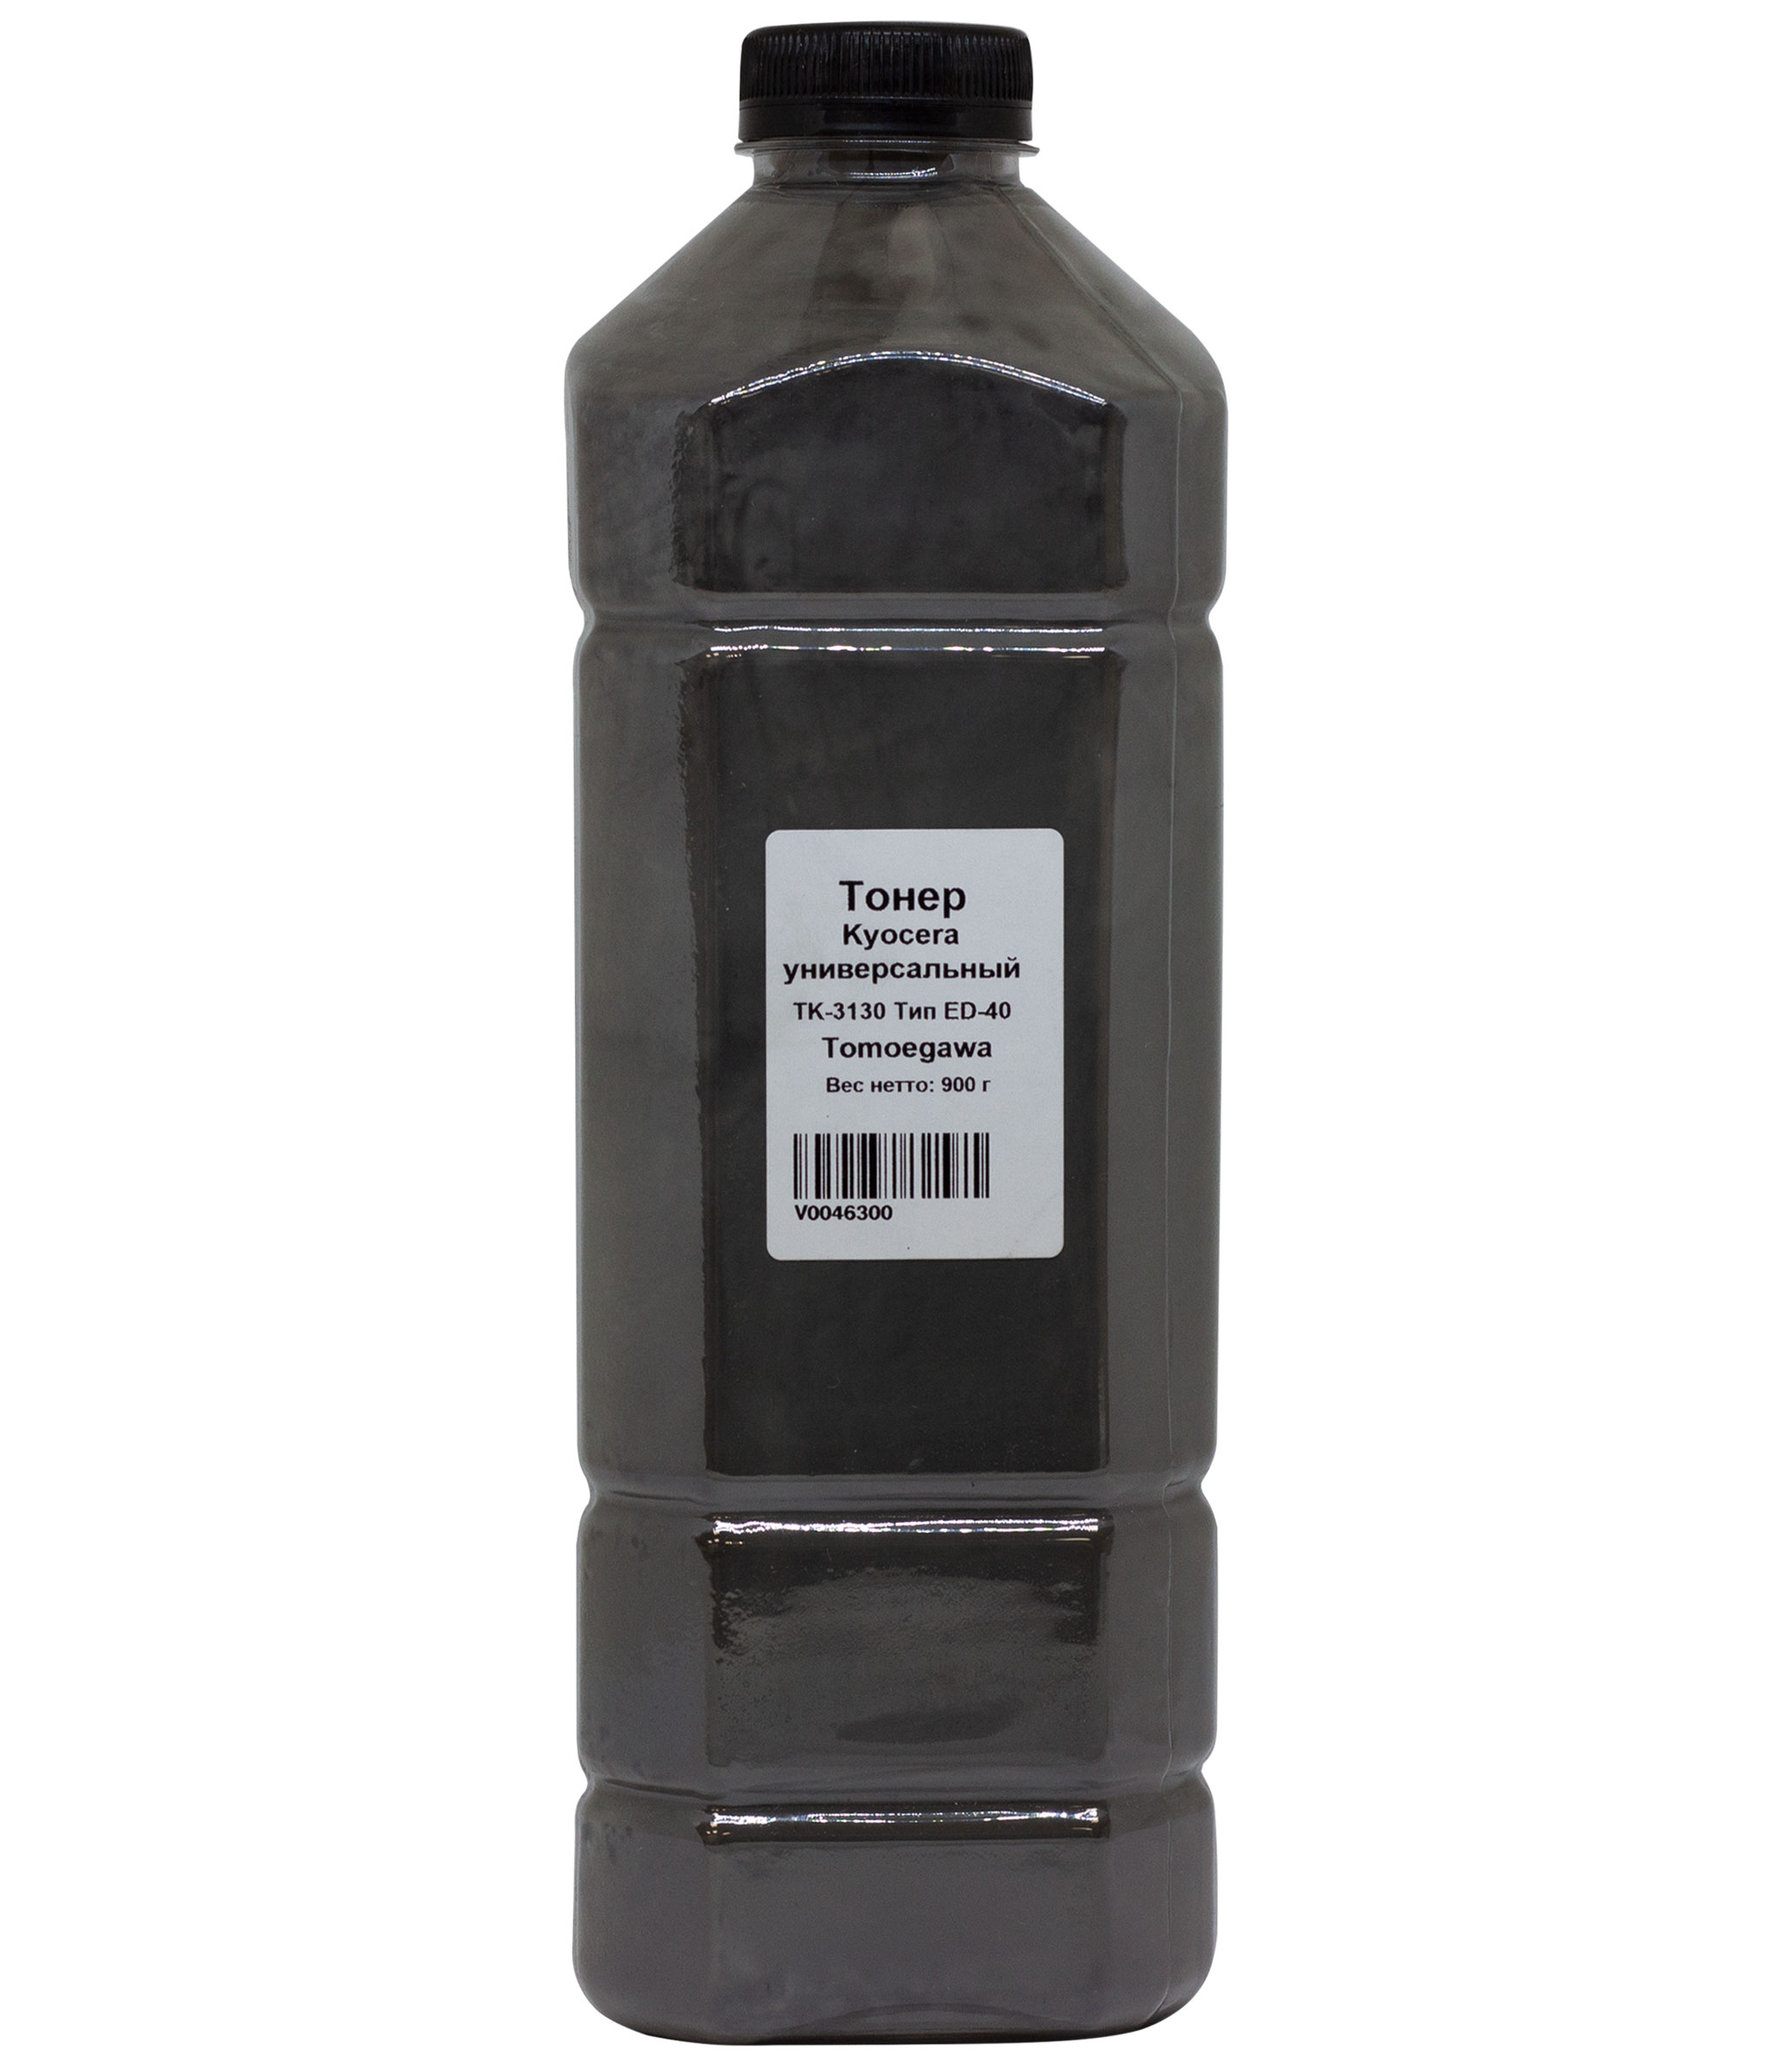 Тонер Tomoegawa ED-40, канистра 900 г, черный, совместимый для Kyocera универсальный (4010715509203)